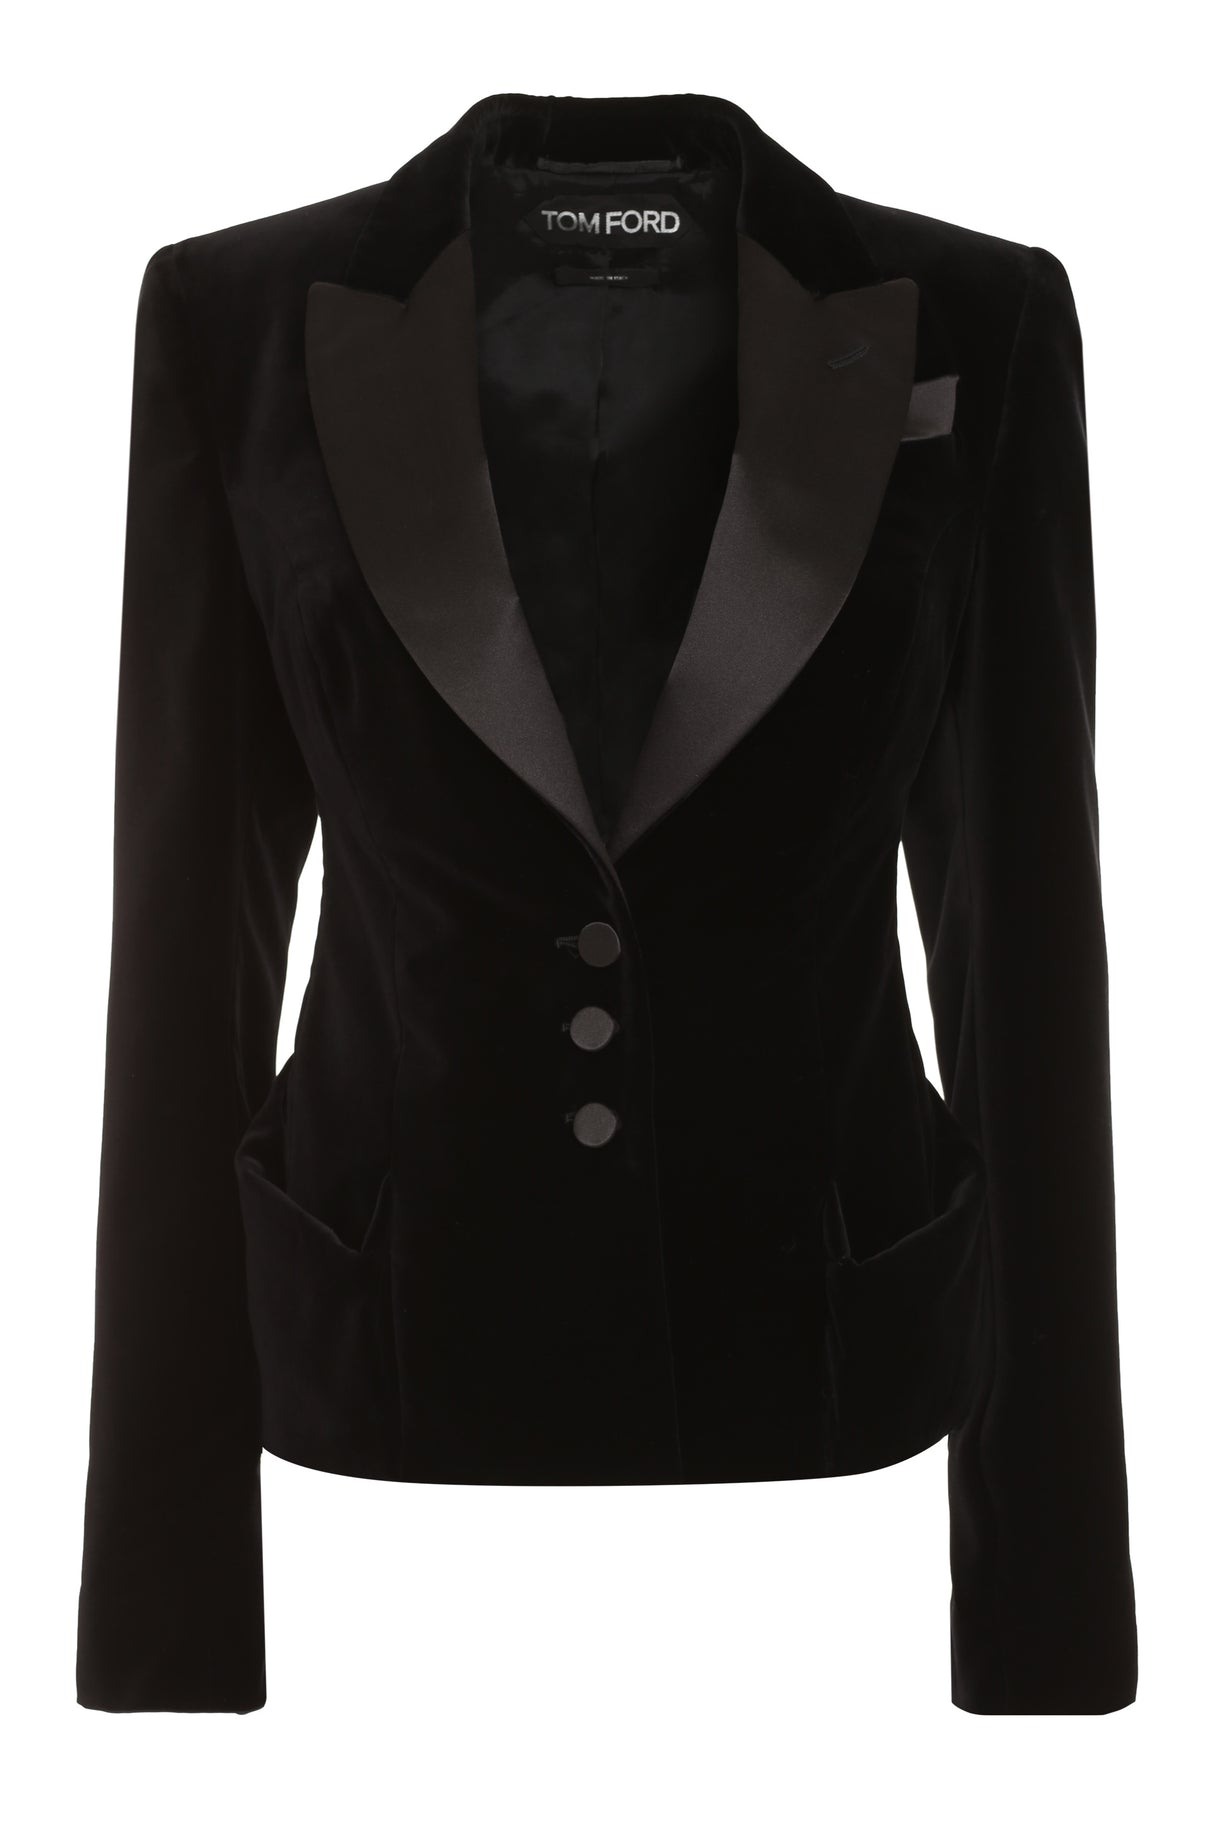 Áo khoác lụa đen tinh tế cho phụ nữ